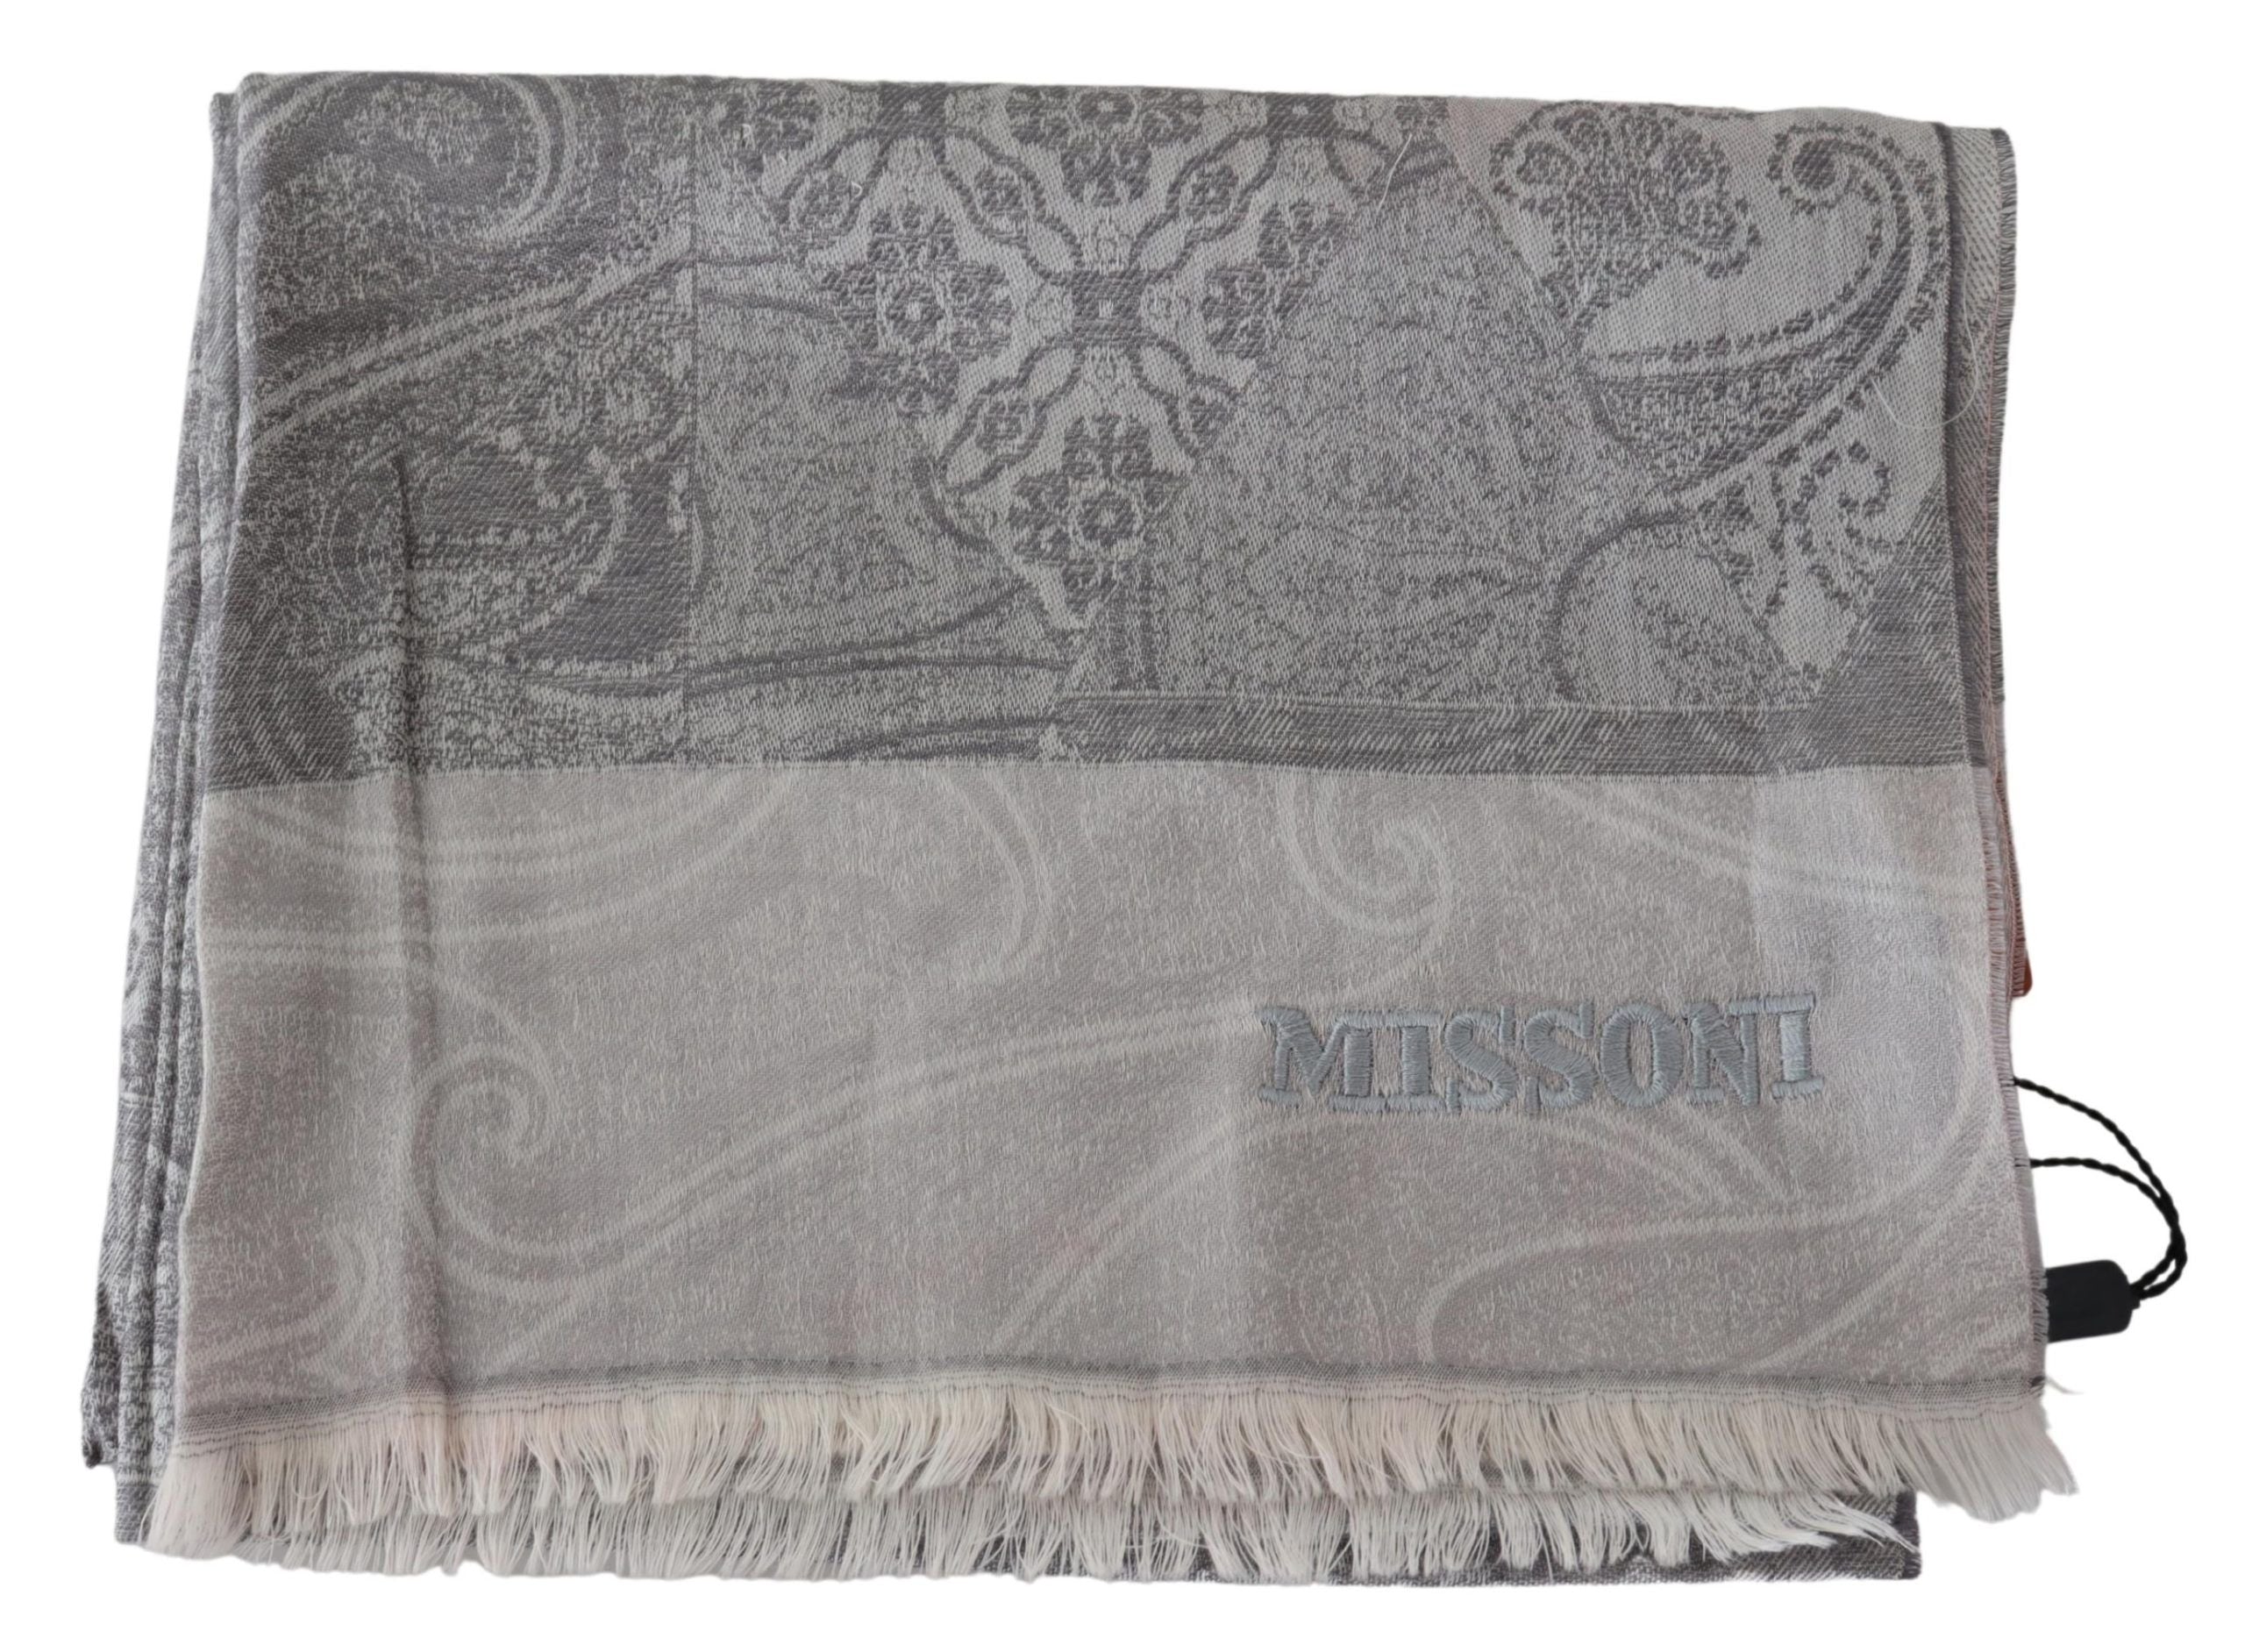 Missoni Elegant Paisley Wool Scarf in Gray